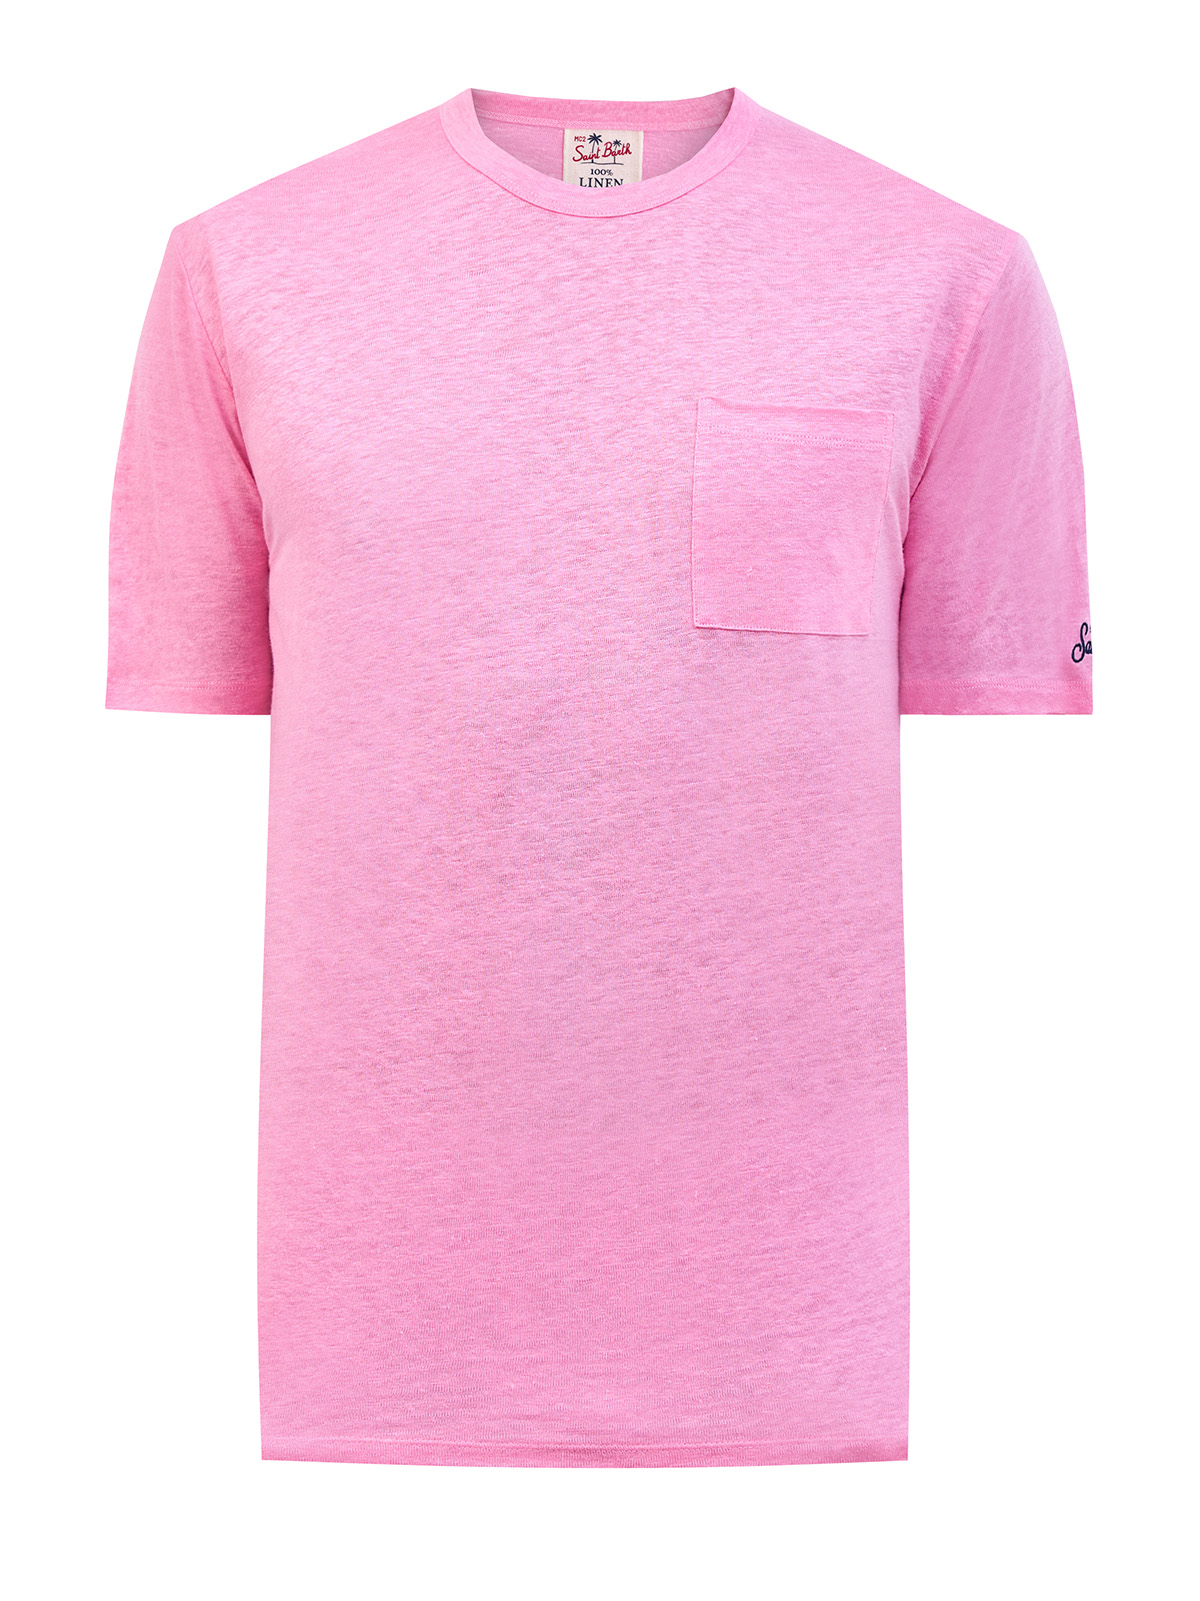 Футболка из меланжевой льняной ткани с карманом и вышивкой MC2 SAINT BARTH, цвет розовый, размер M;L;XL;2XL - фото 1